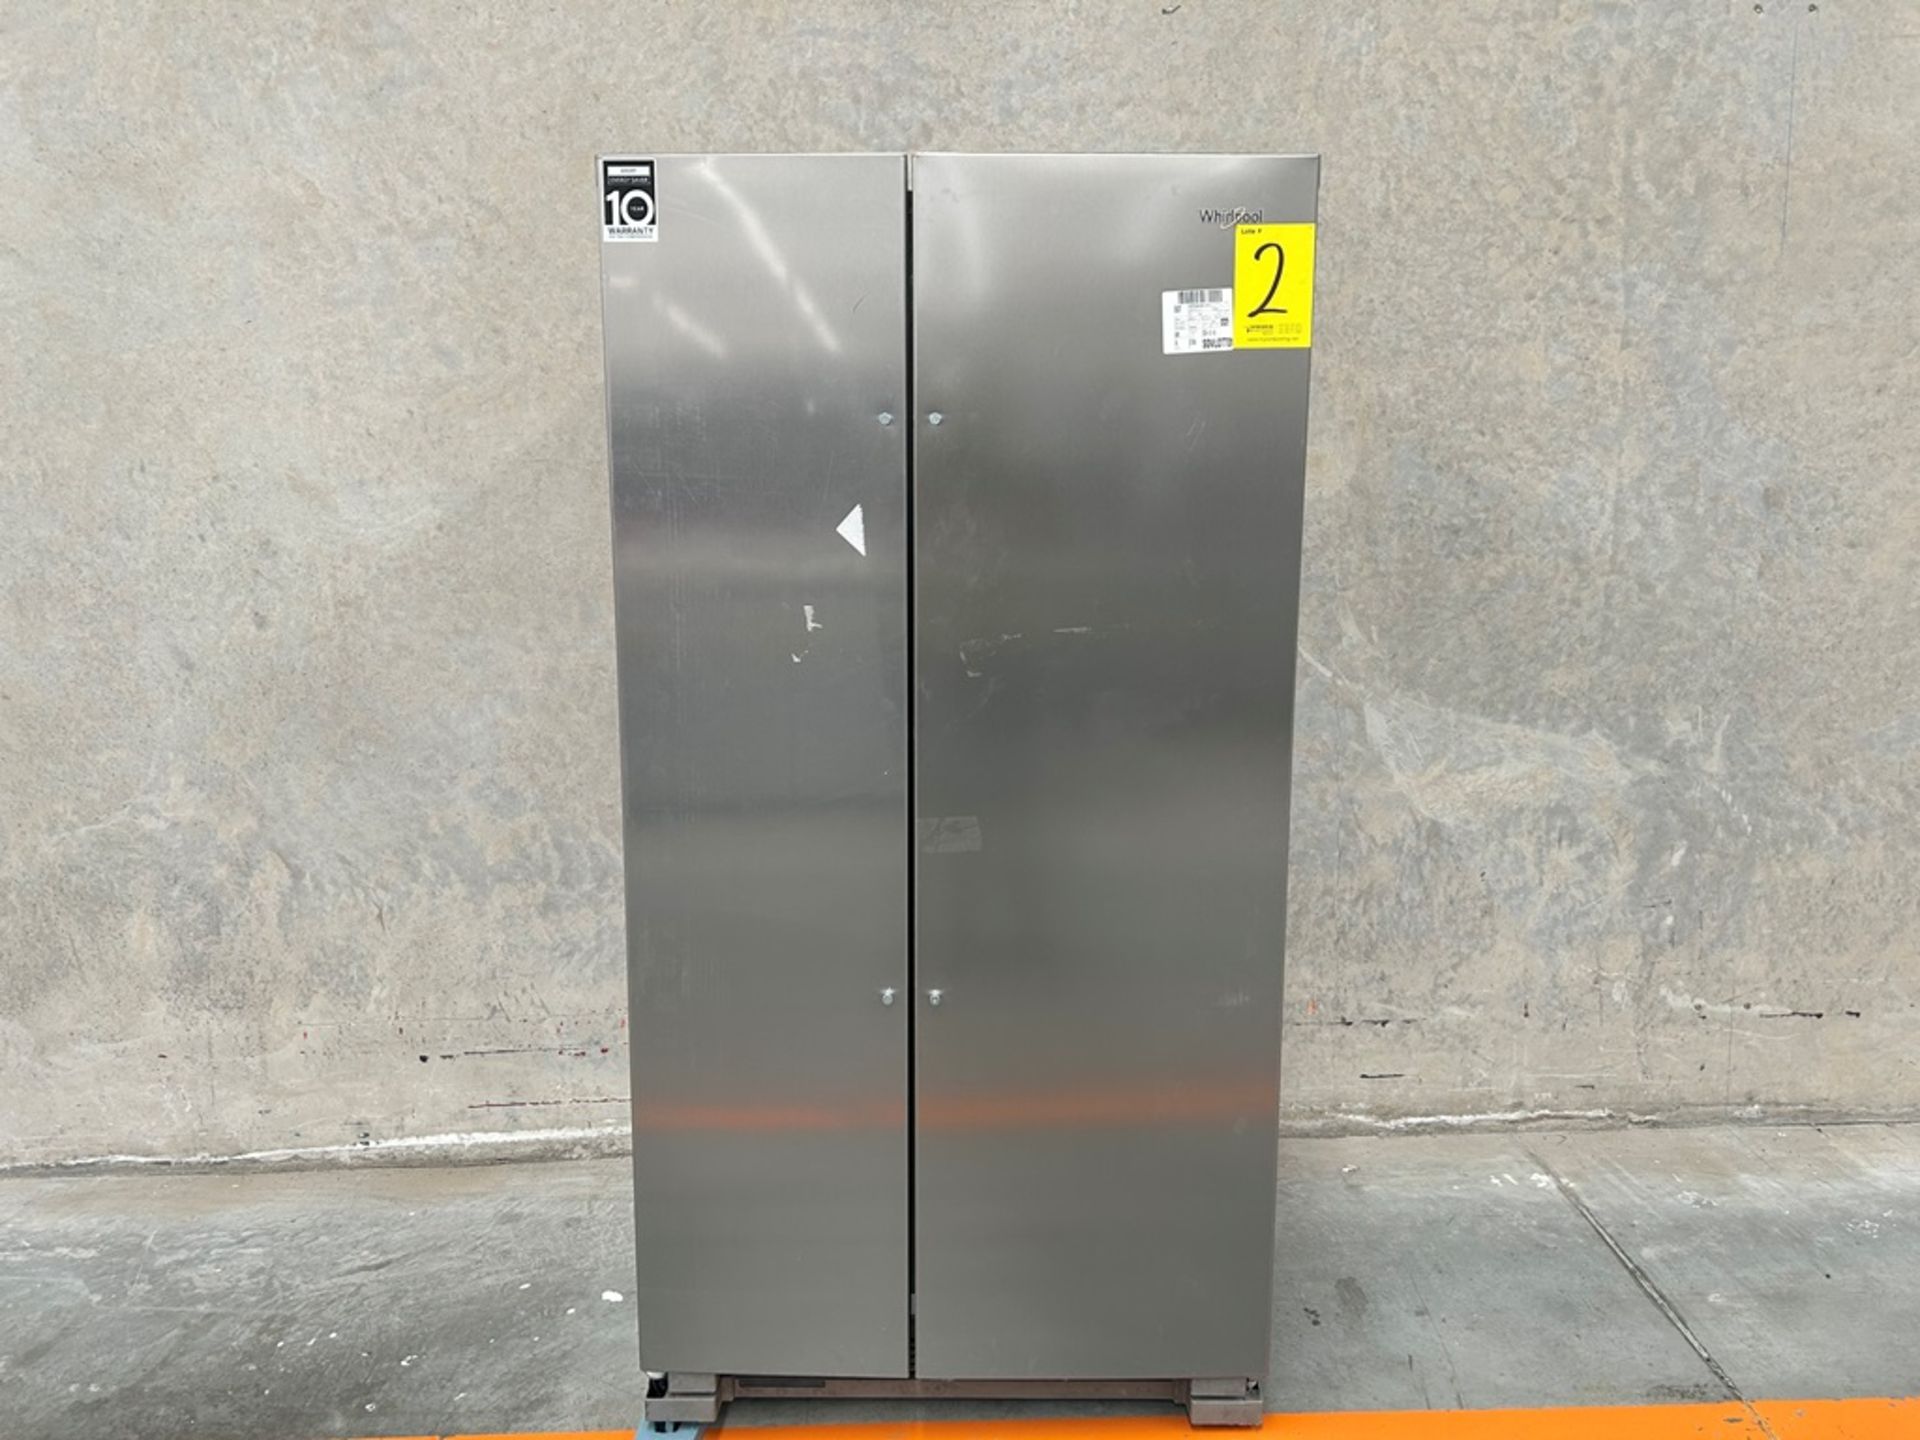 Refrigerador Marca WHIRLPOOL, Modelo WD5600S, Serie 813311, Color GRIS (Equipo de Devolución)